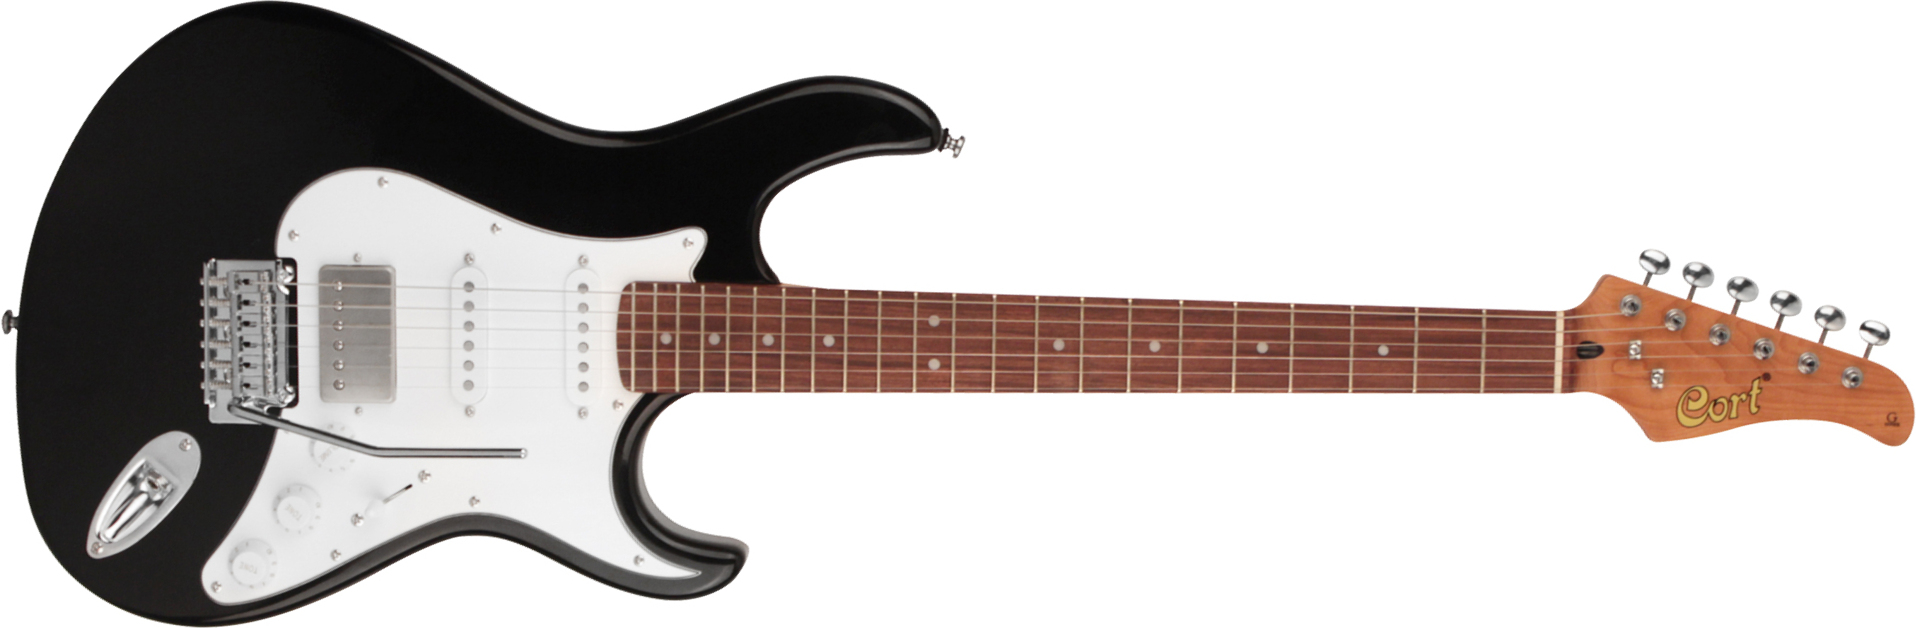 Cort G260cs Hss Trem Pau - Black - Guitarra eléctrica con forma de str. - Main picture